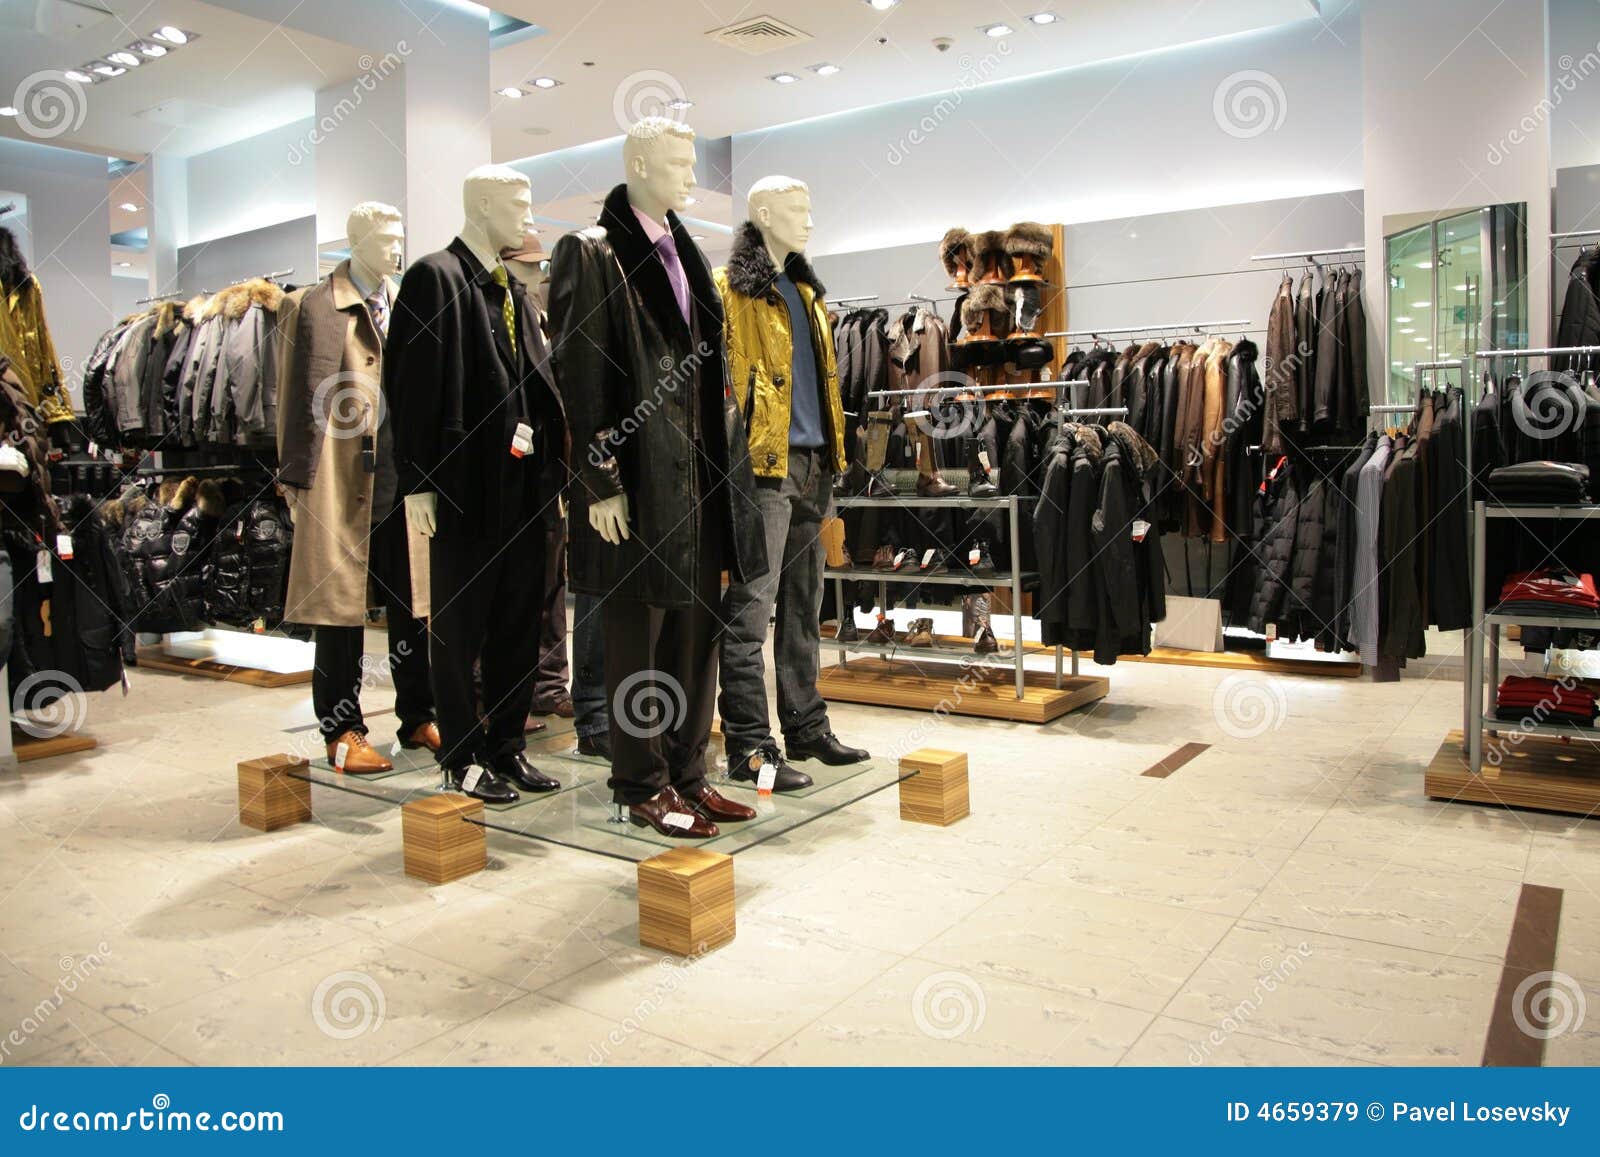 Men mannequins in shop stock image. Image of inside, people - 4659379